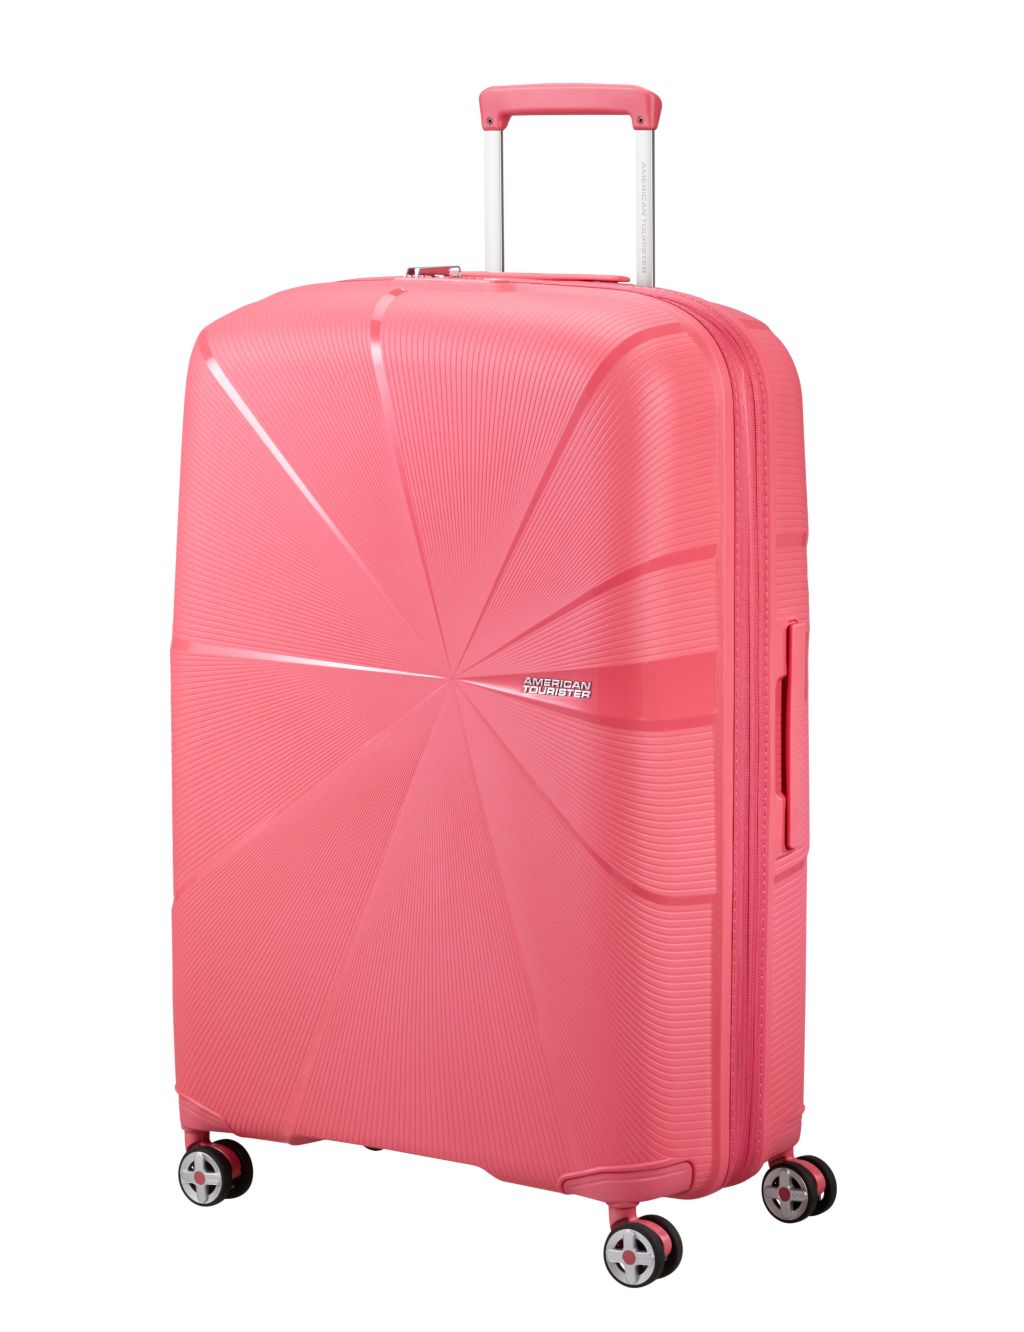 Starvibe 4 Wheel Hard Shell Large Suitcase image 4